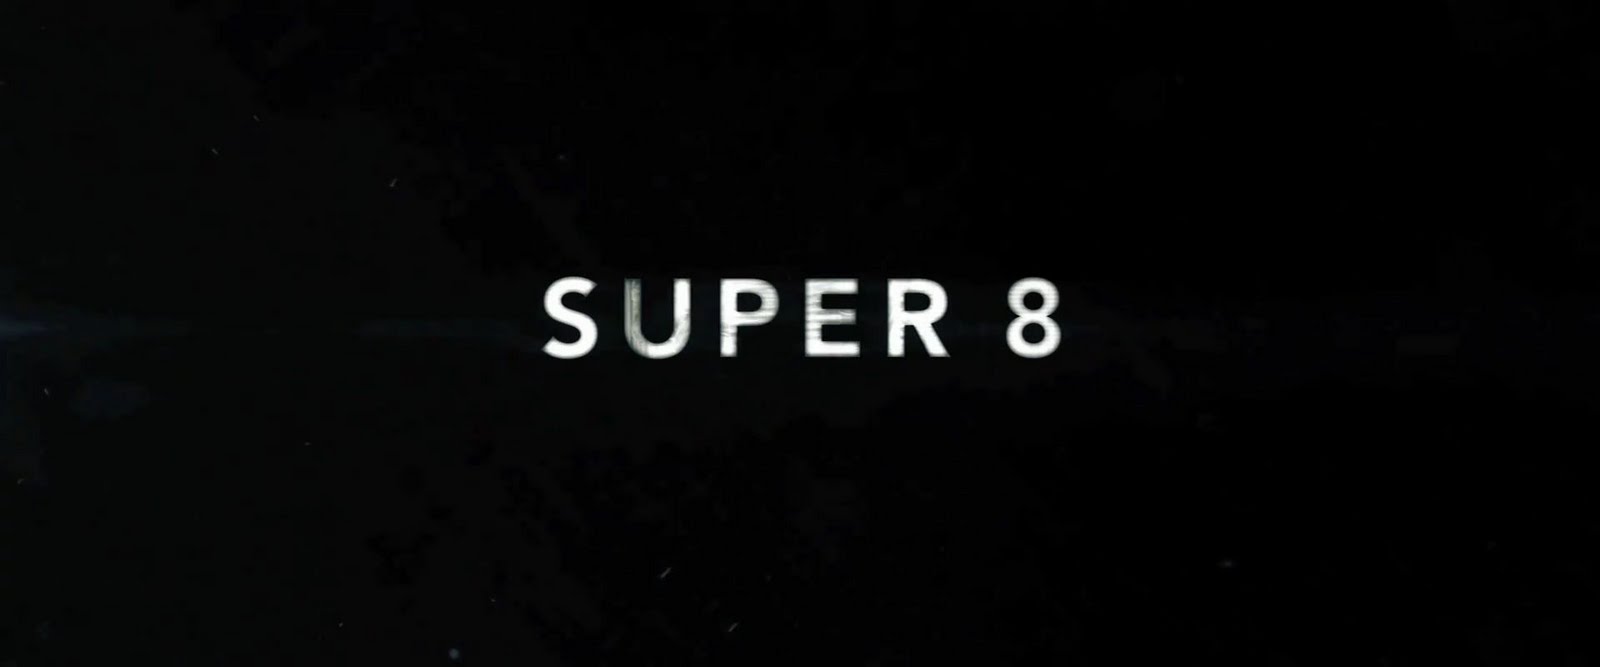 Super 8 игра. Super 8 logo. Супер 8 Постер. Шаблон супер 8.